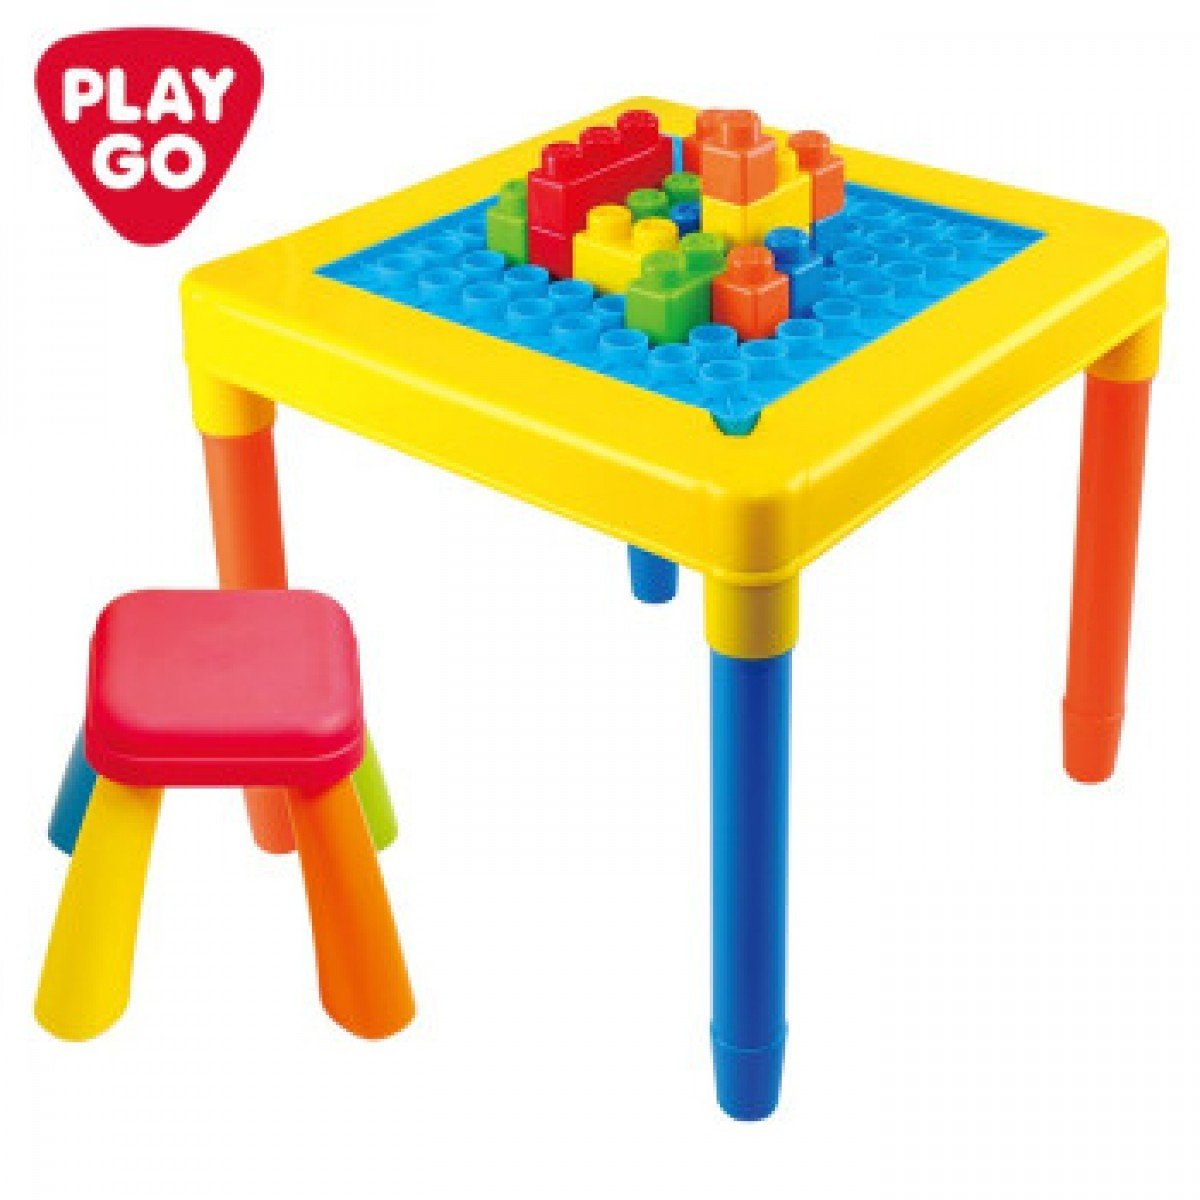 โต๊ะเก้าอี้พร้อมตัวต่อบล๊อก My Play Table with Chair (รุ่น 2715) ยี่ห้อ PLAYGO